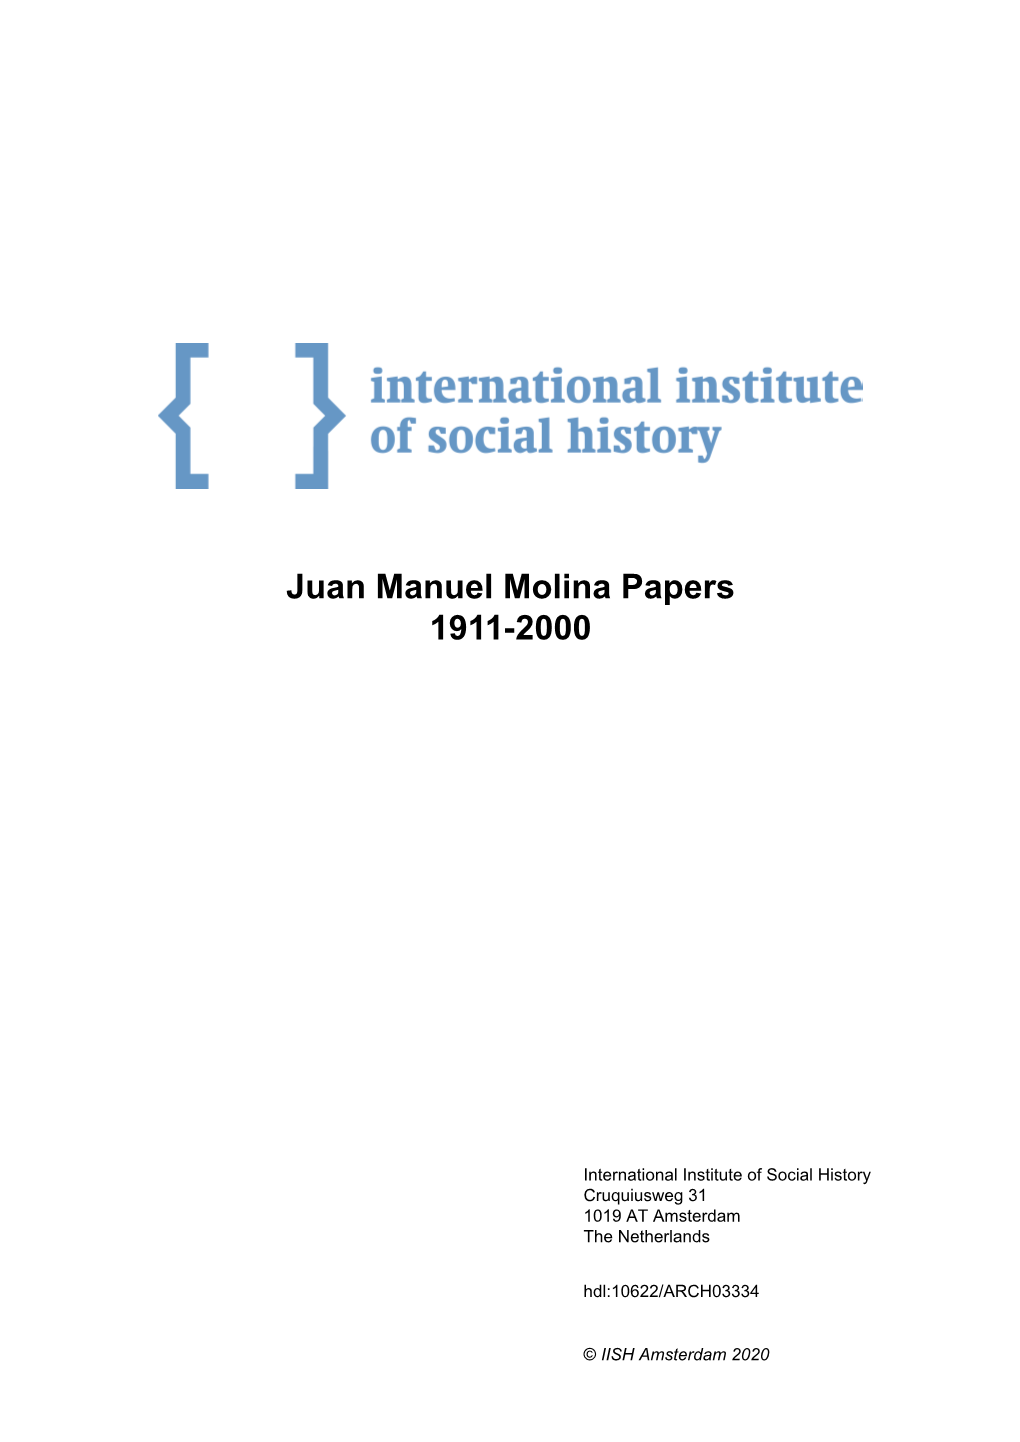 Juan Manuel Molina Papers 1911-2000